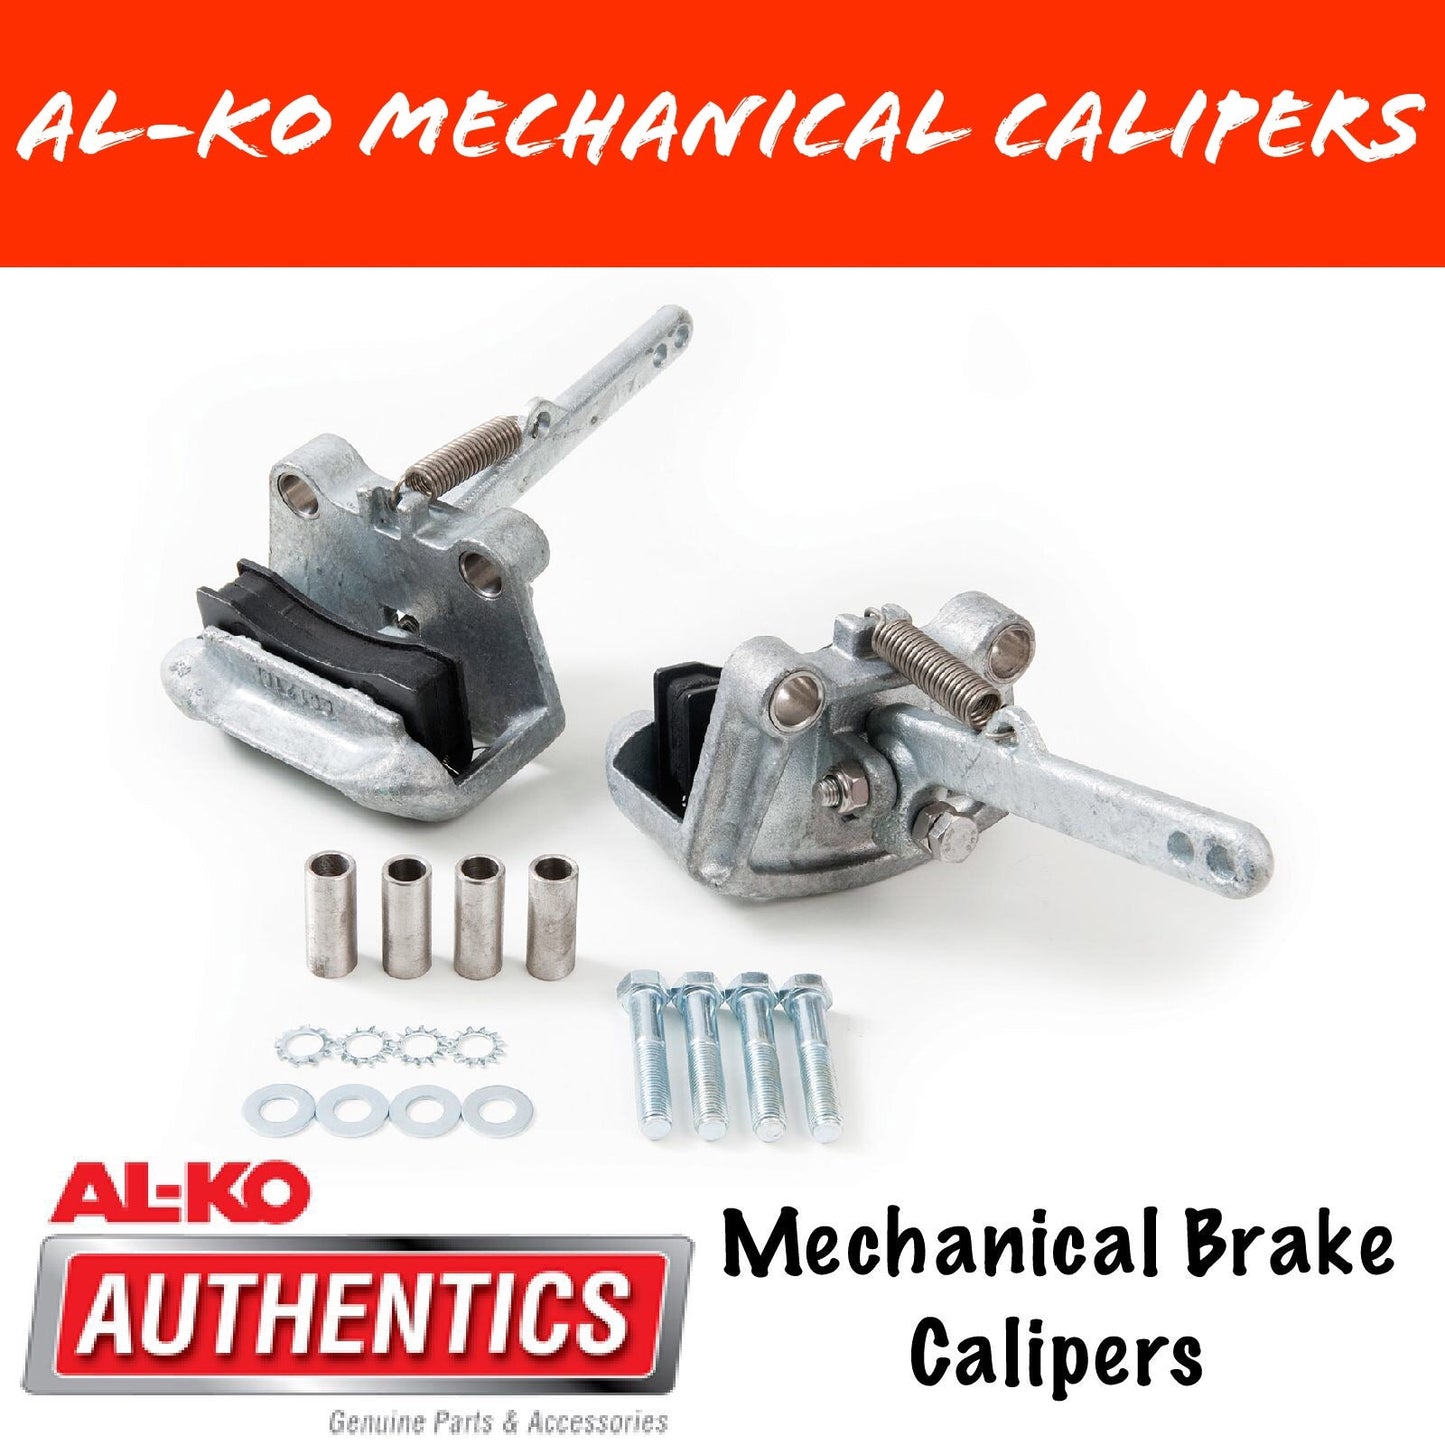 AL-KO Mechanical Brake Caliper Pair